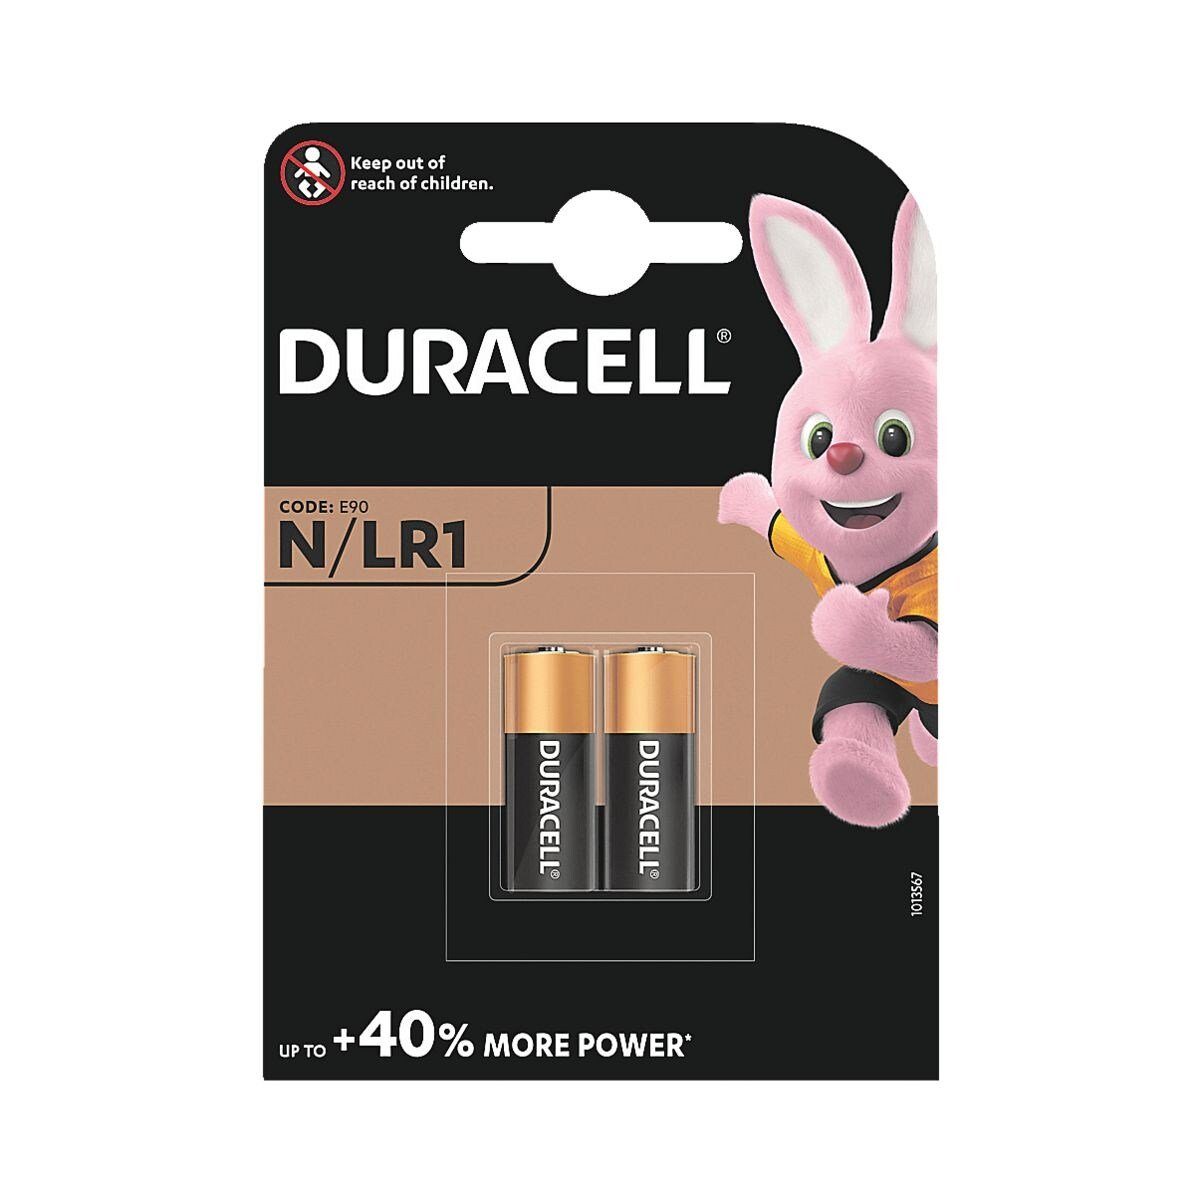 Duracell Batterie, (1.5 V, 2 St), Lady / N / LR1 / MN9100 / E90, 1,5 V, Alkali